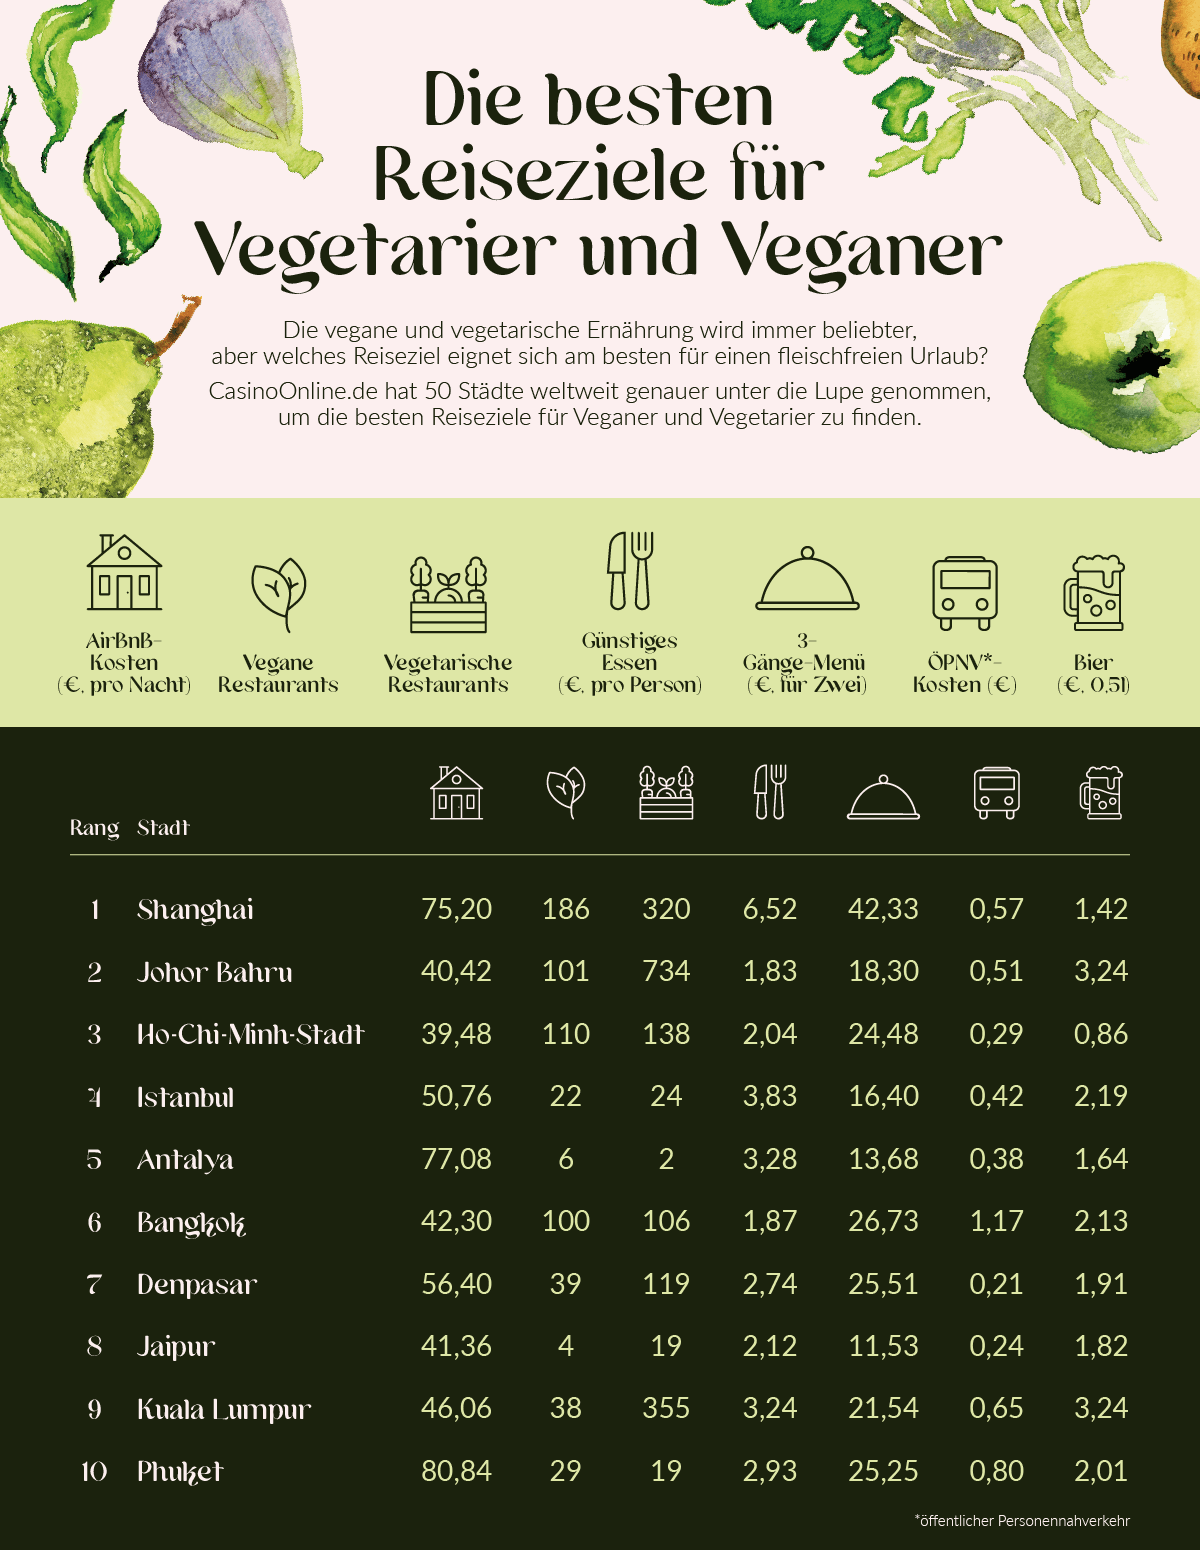 Die besten Reiseziele für Vegetarier und Veganer